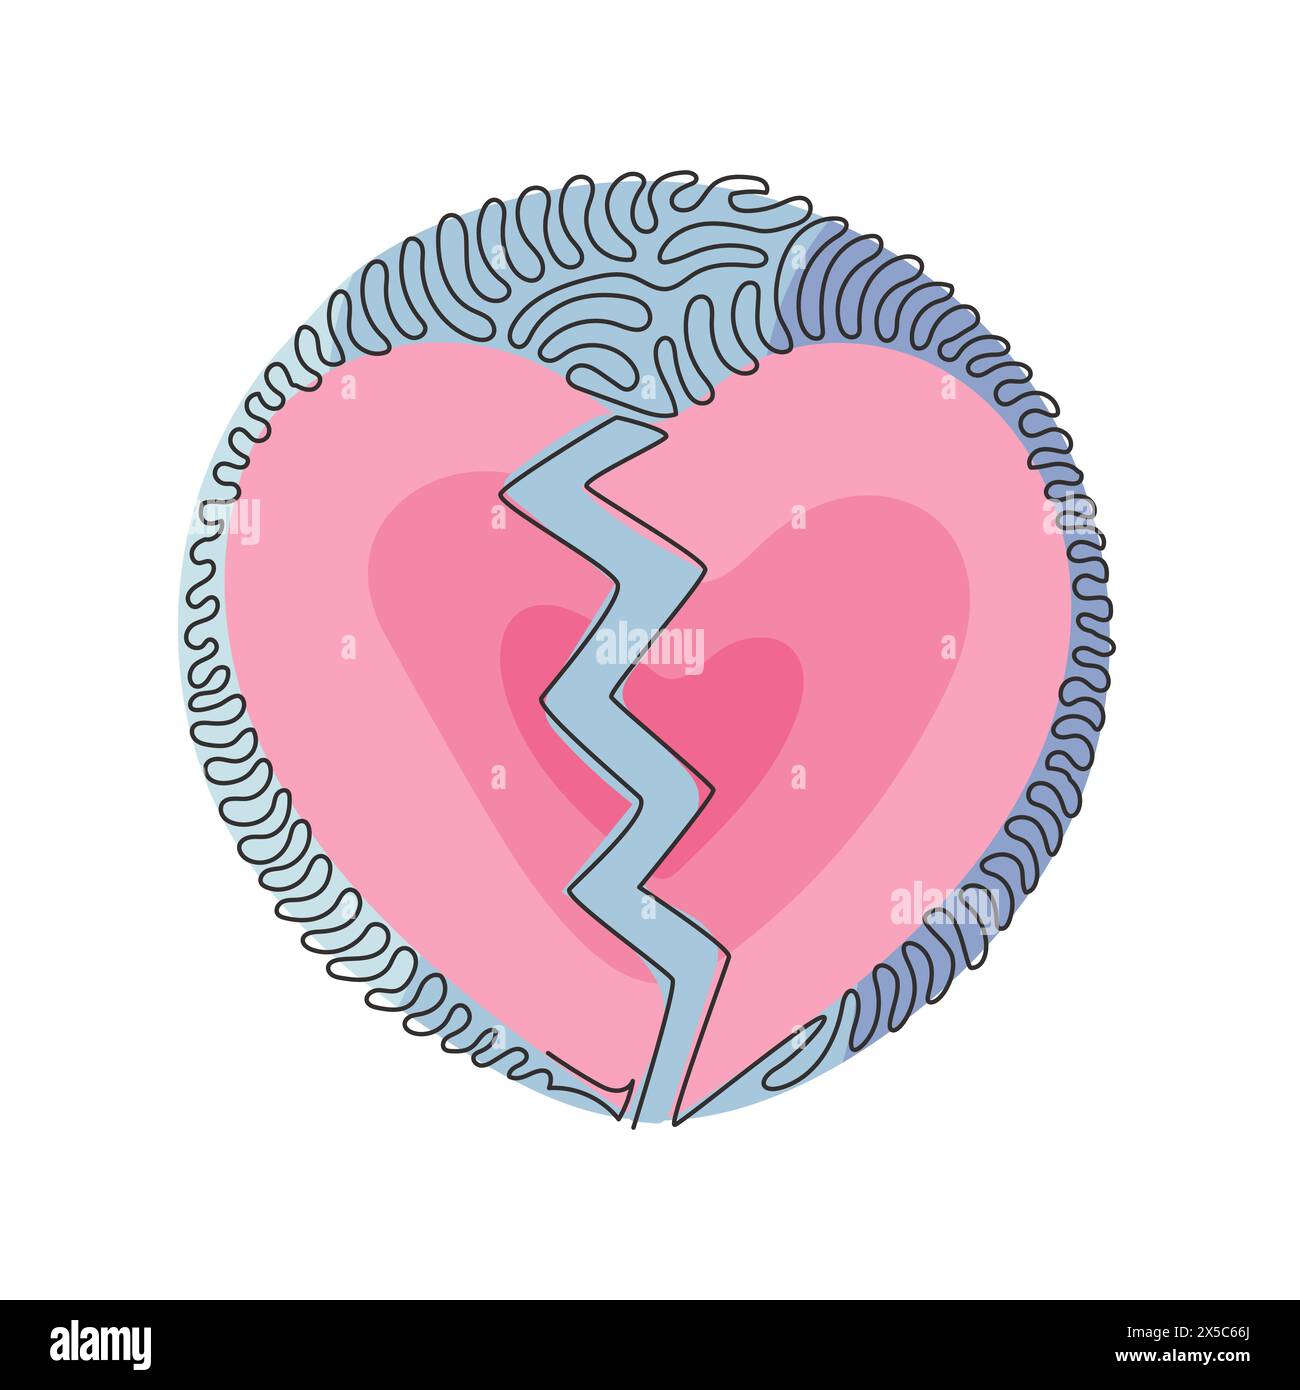 Einzelne durchgehende Linienzeichnung Love Shape in zwei Teile gebrochen. Emoji von Herzbruch, gebrochenem Herzen oder Scheidungssymbol. Hintergrundstil mit kreisenden Wellen. Dynami Stock Vektor